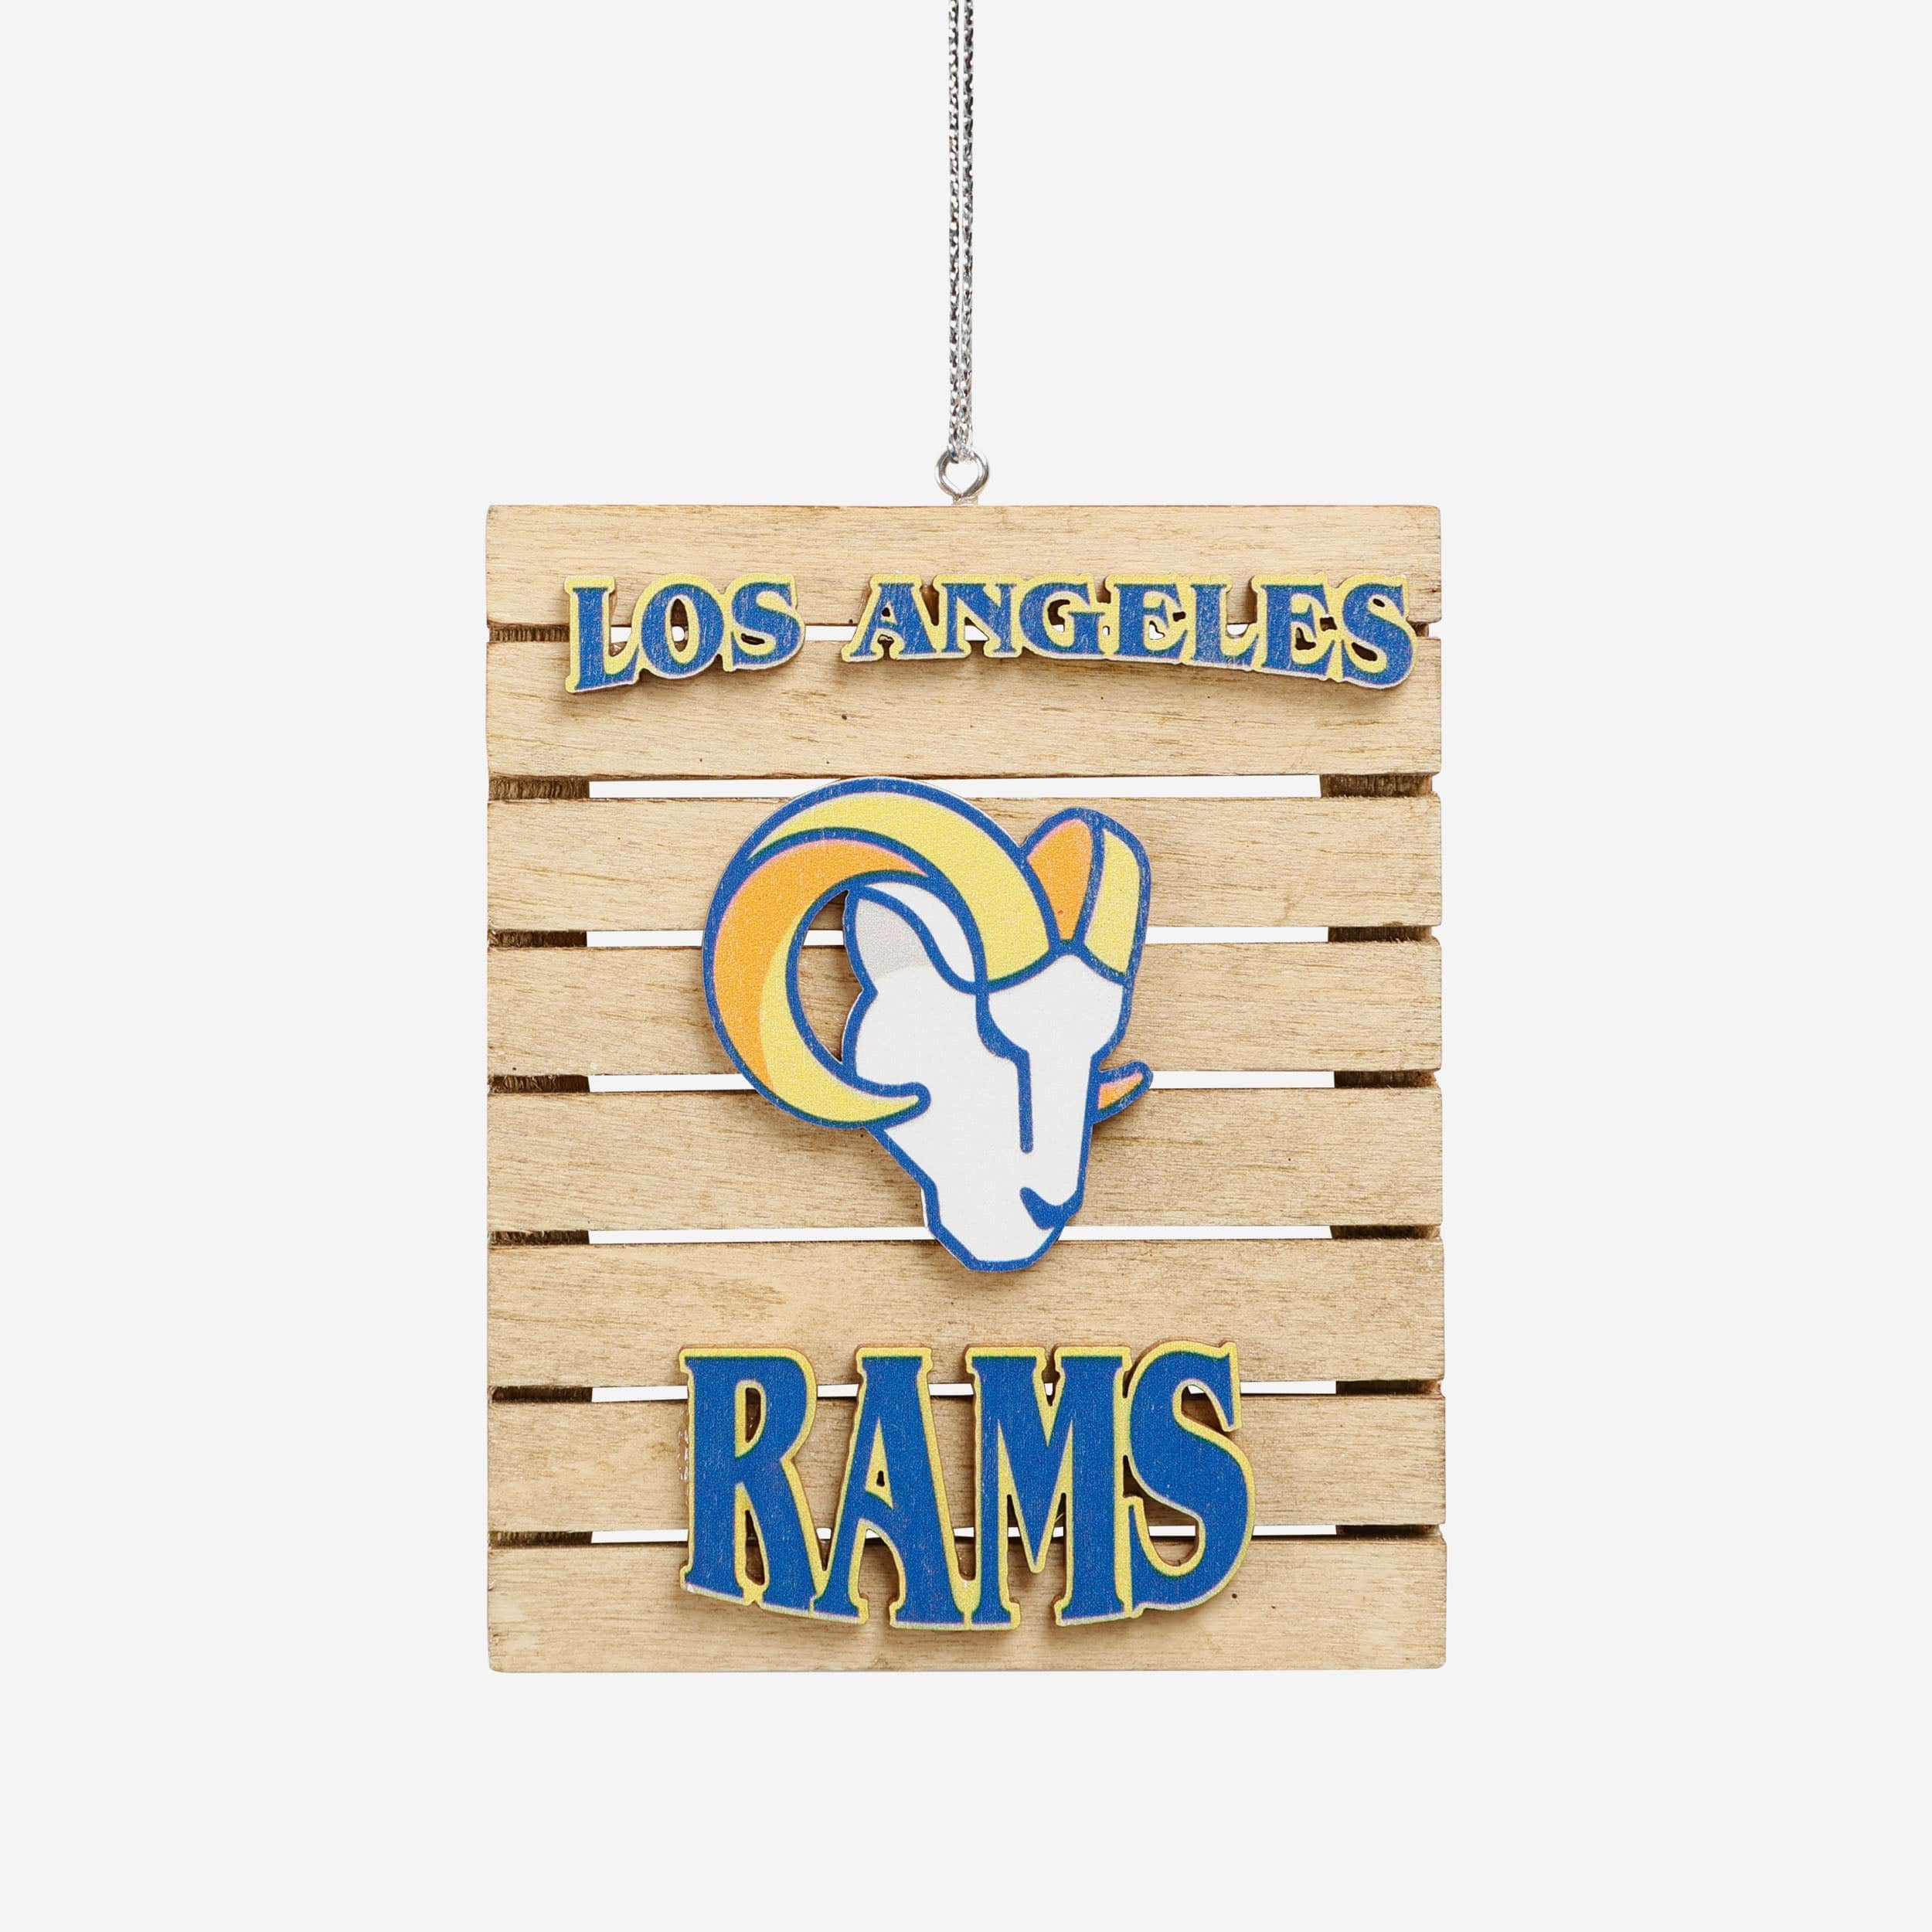 Los Angeles Rams Apparel, Collectibles, and Fan Gear. FOCO